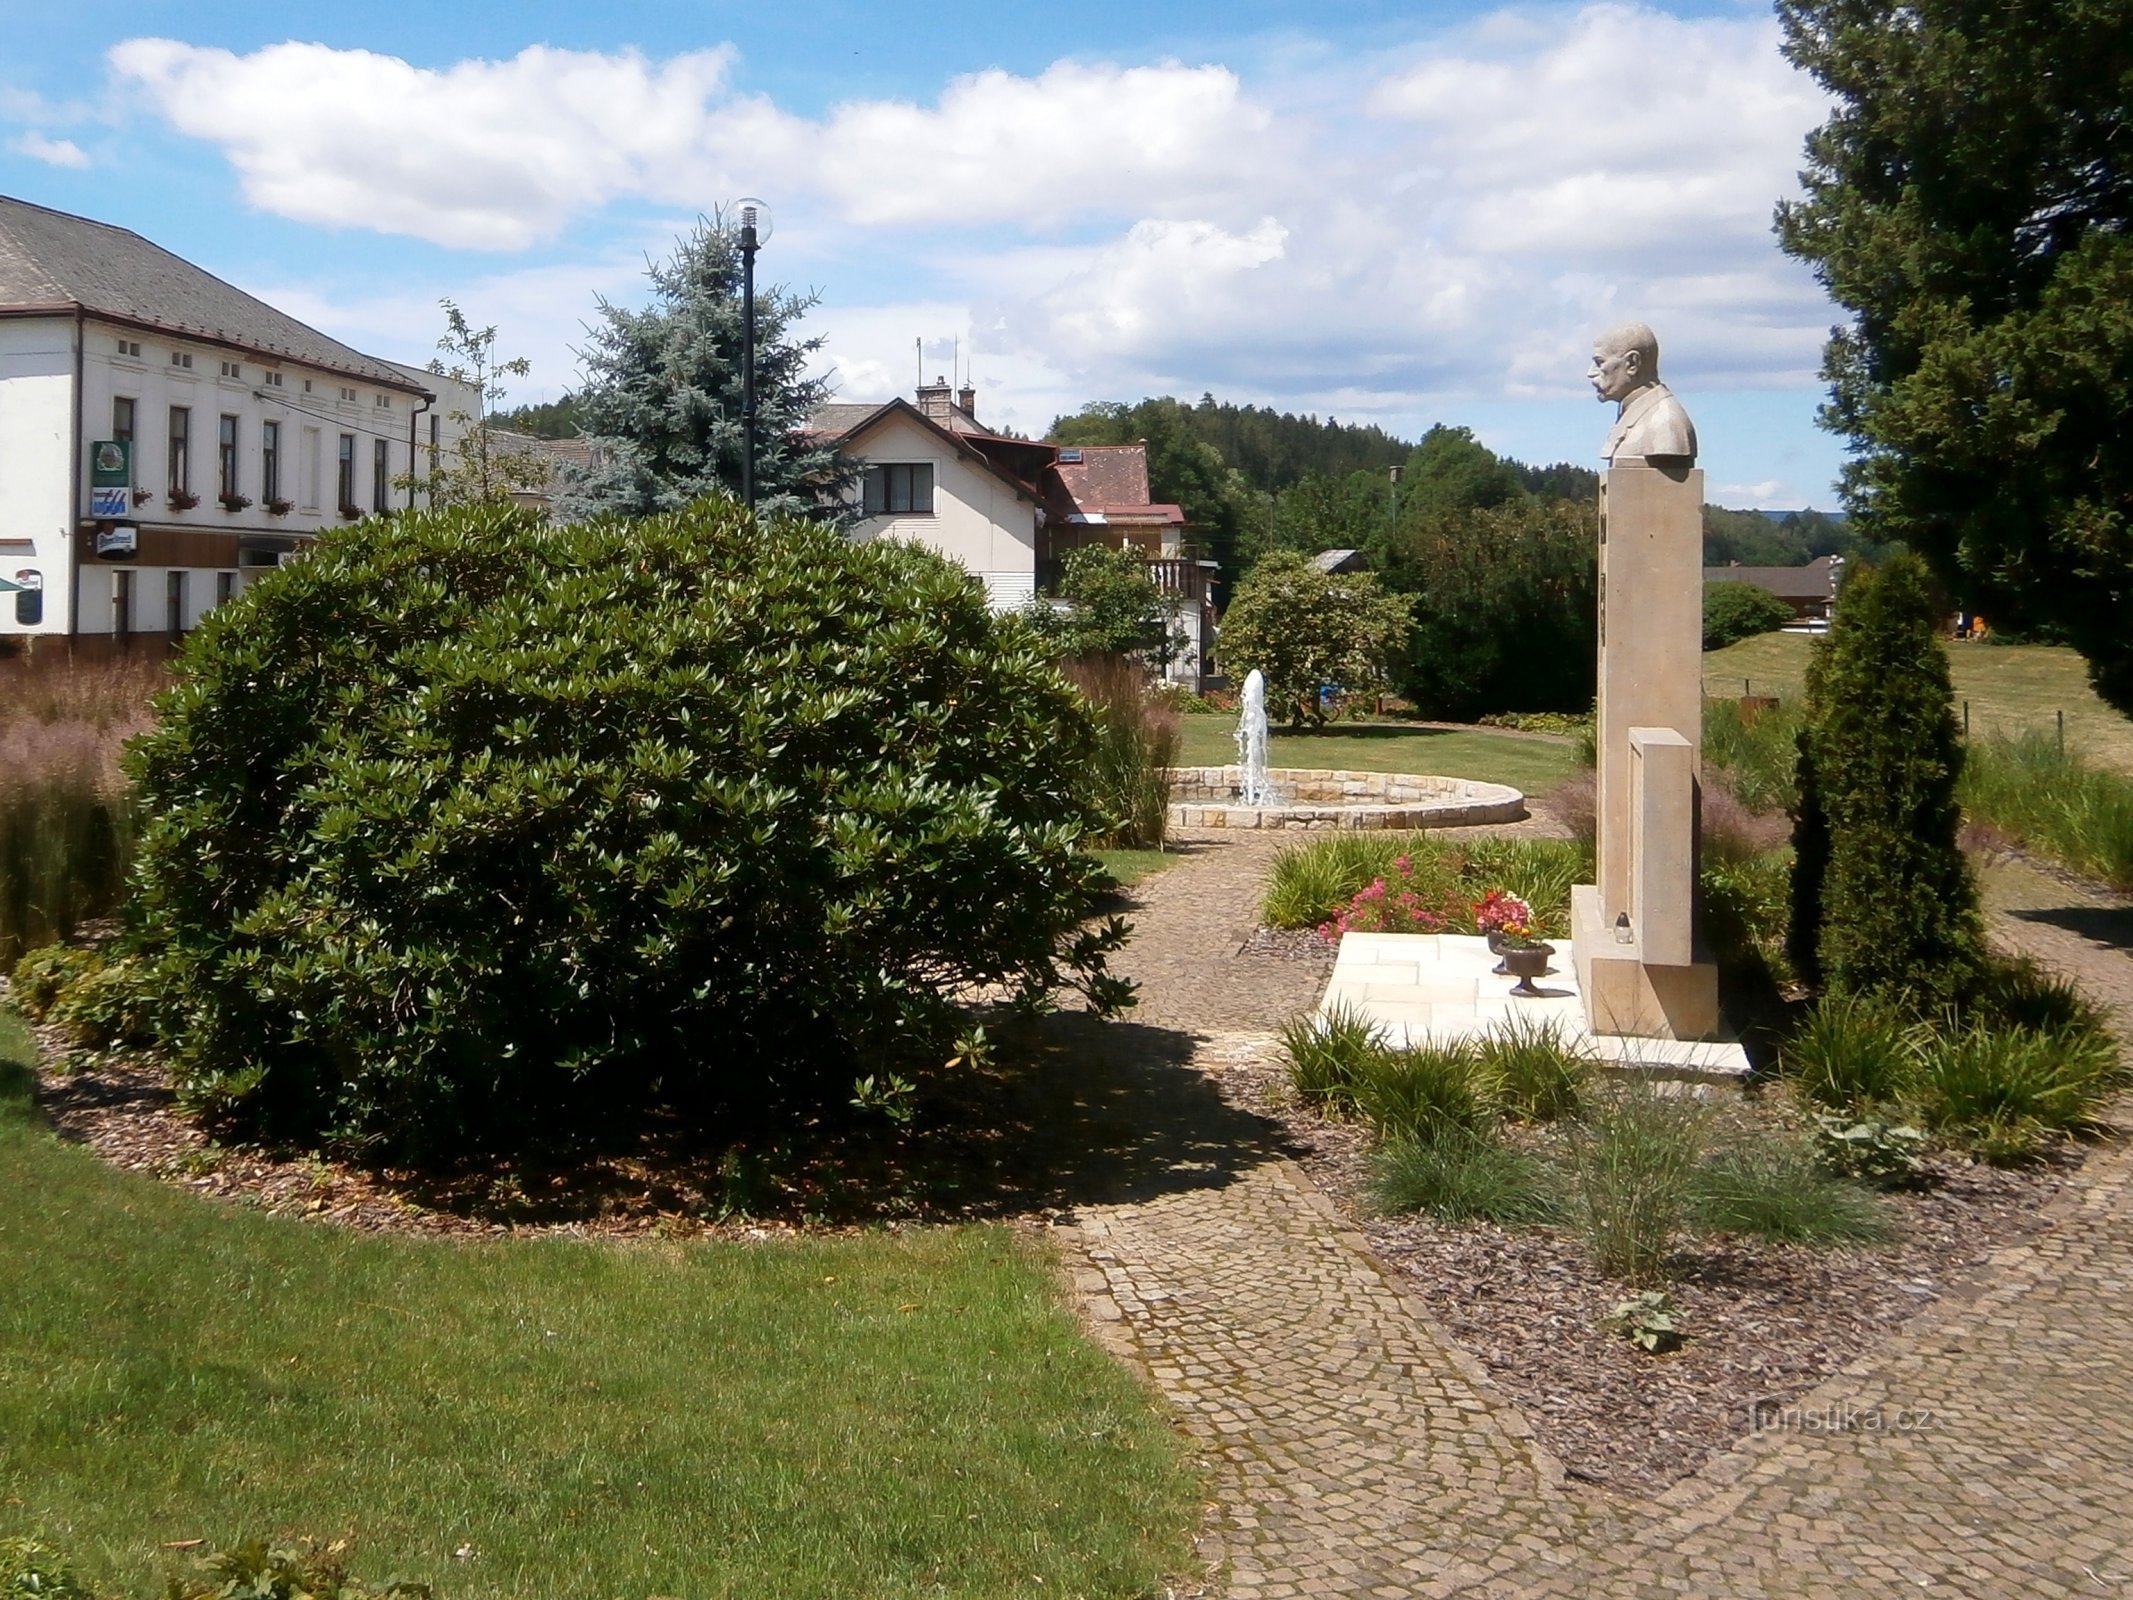 Parque junto al monumento a los caídos en la Primera Guerra Mundial (Havlovice)